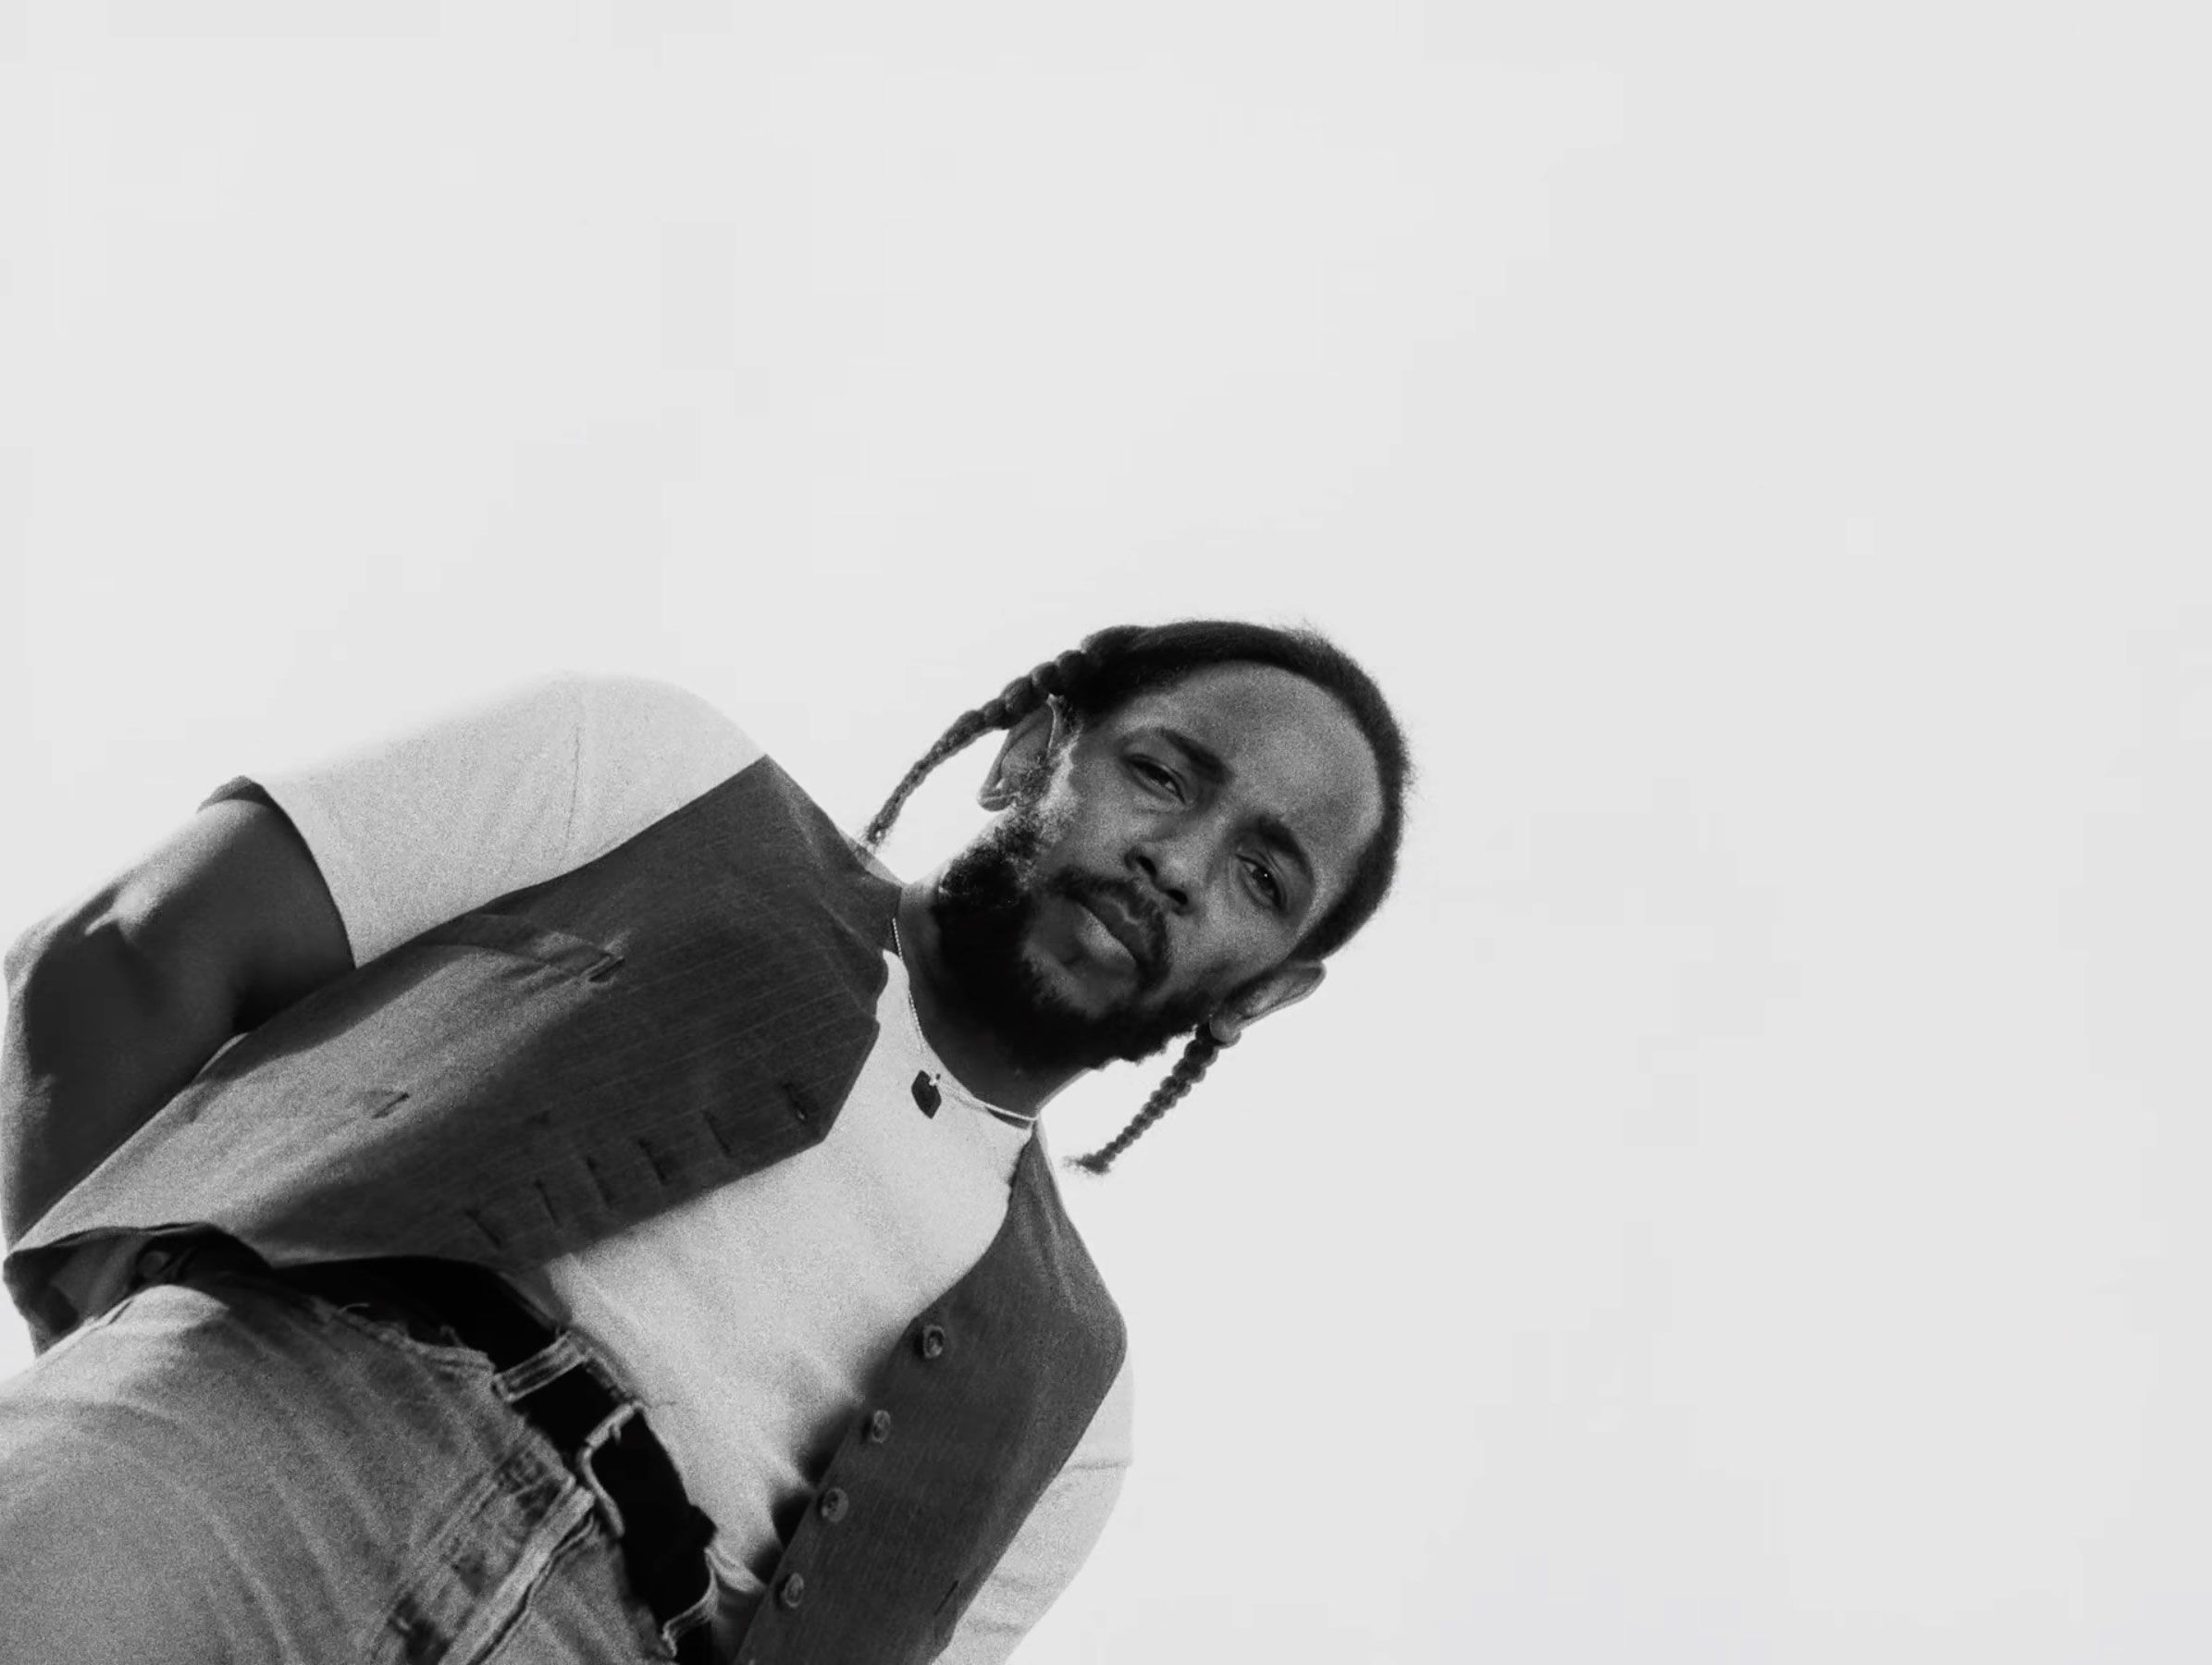 Kendrick Lamar Shares Reflective Message Alongside Huge Batch of